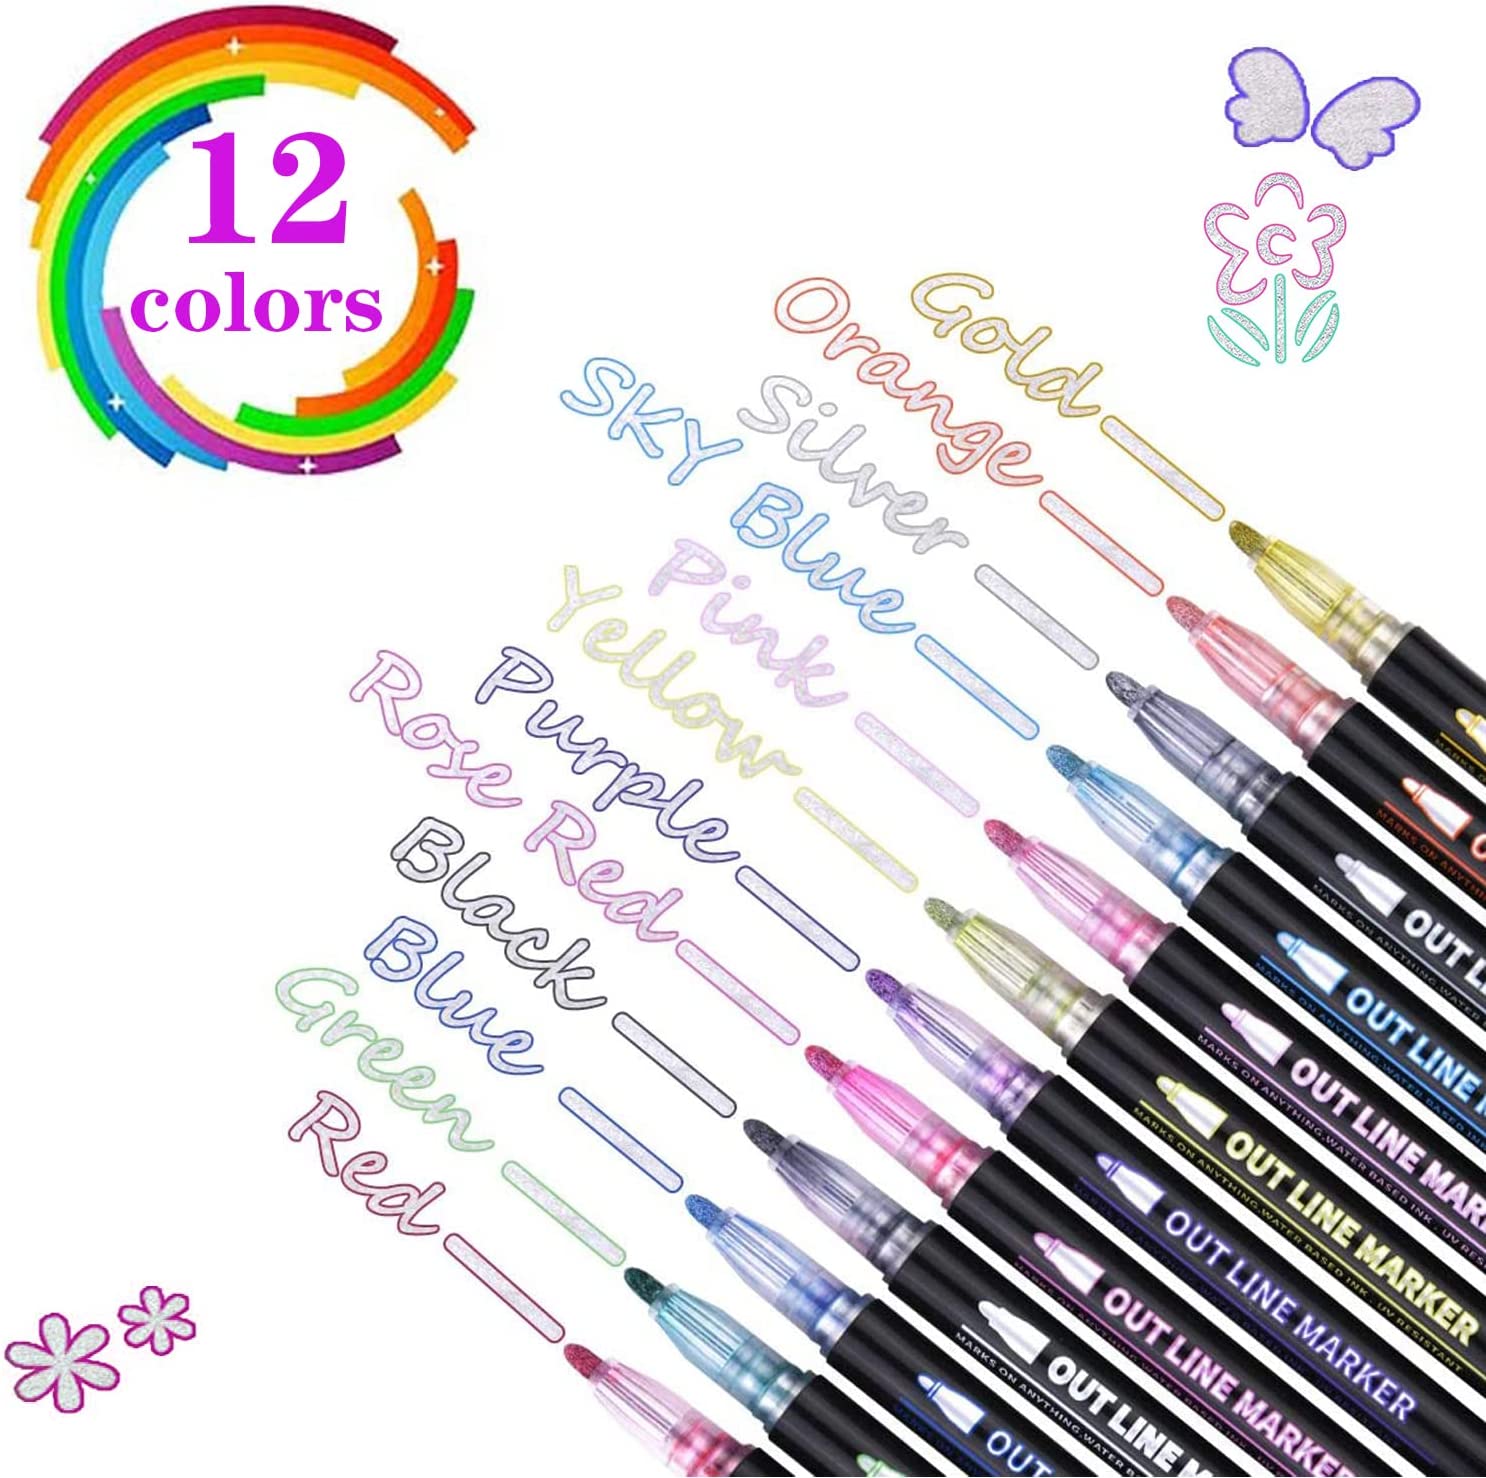 12 Colors Glitter Shimmer Marker Set, Double Line Outline Pens,  Self-Outline Metallic Markers, Super Squiggles Outline Markers, Glitter  Shimmer